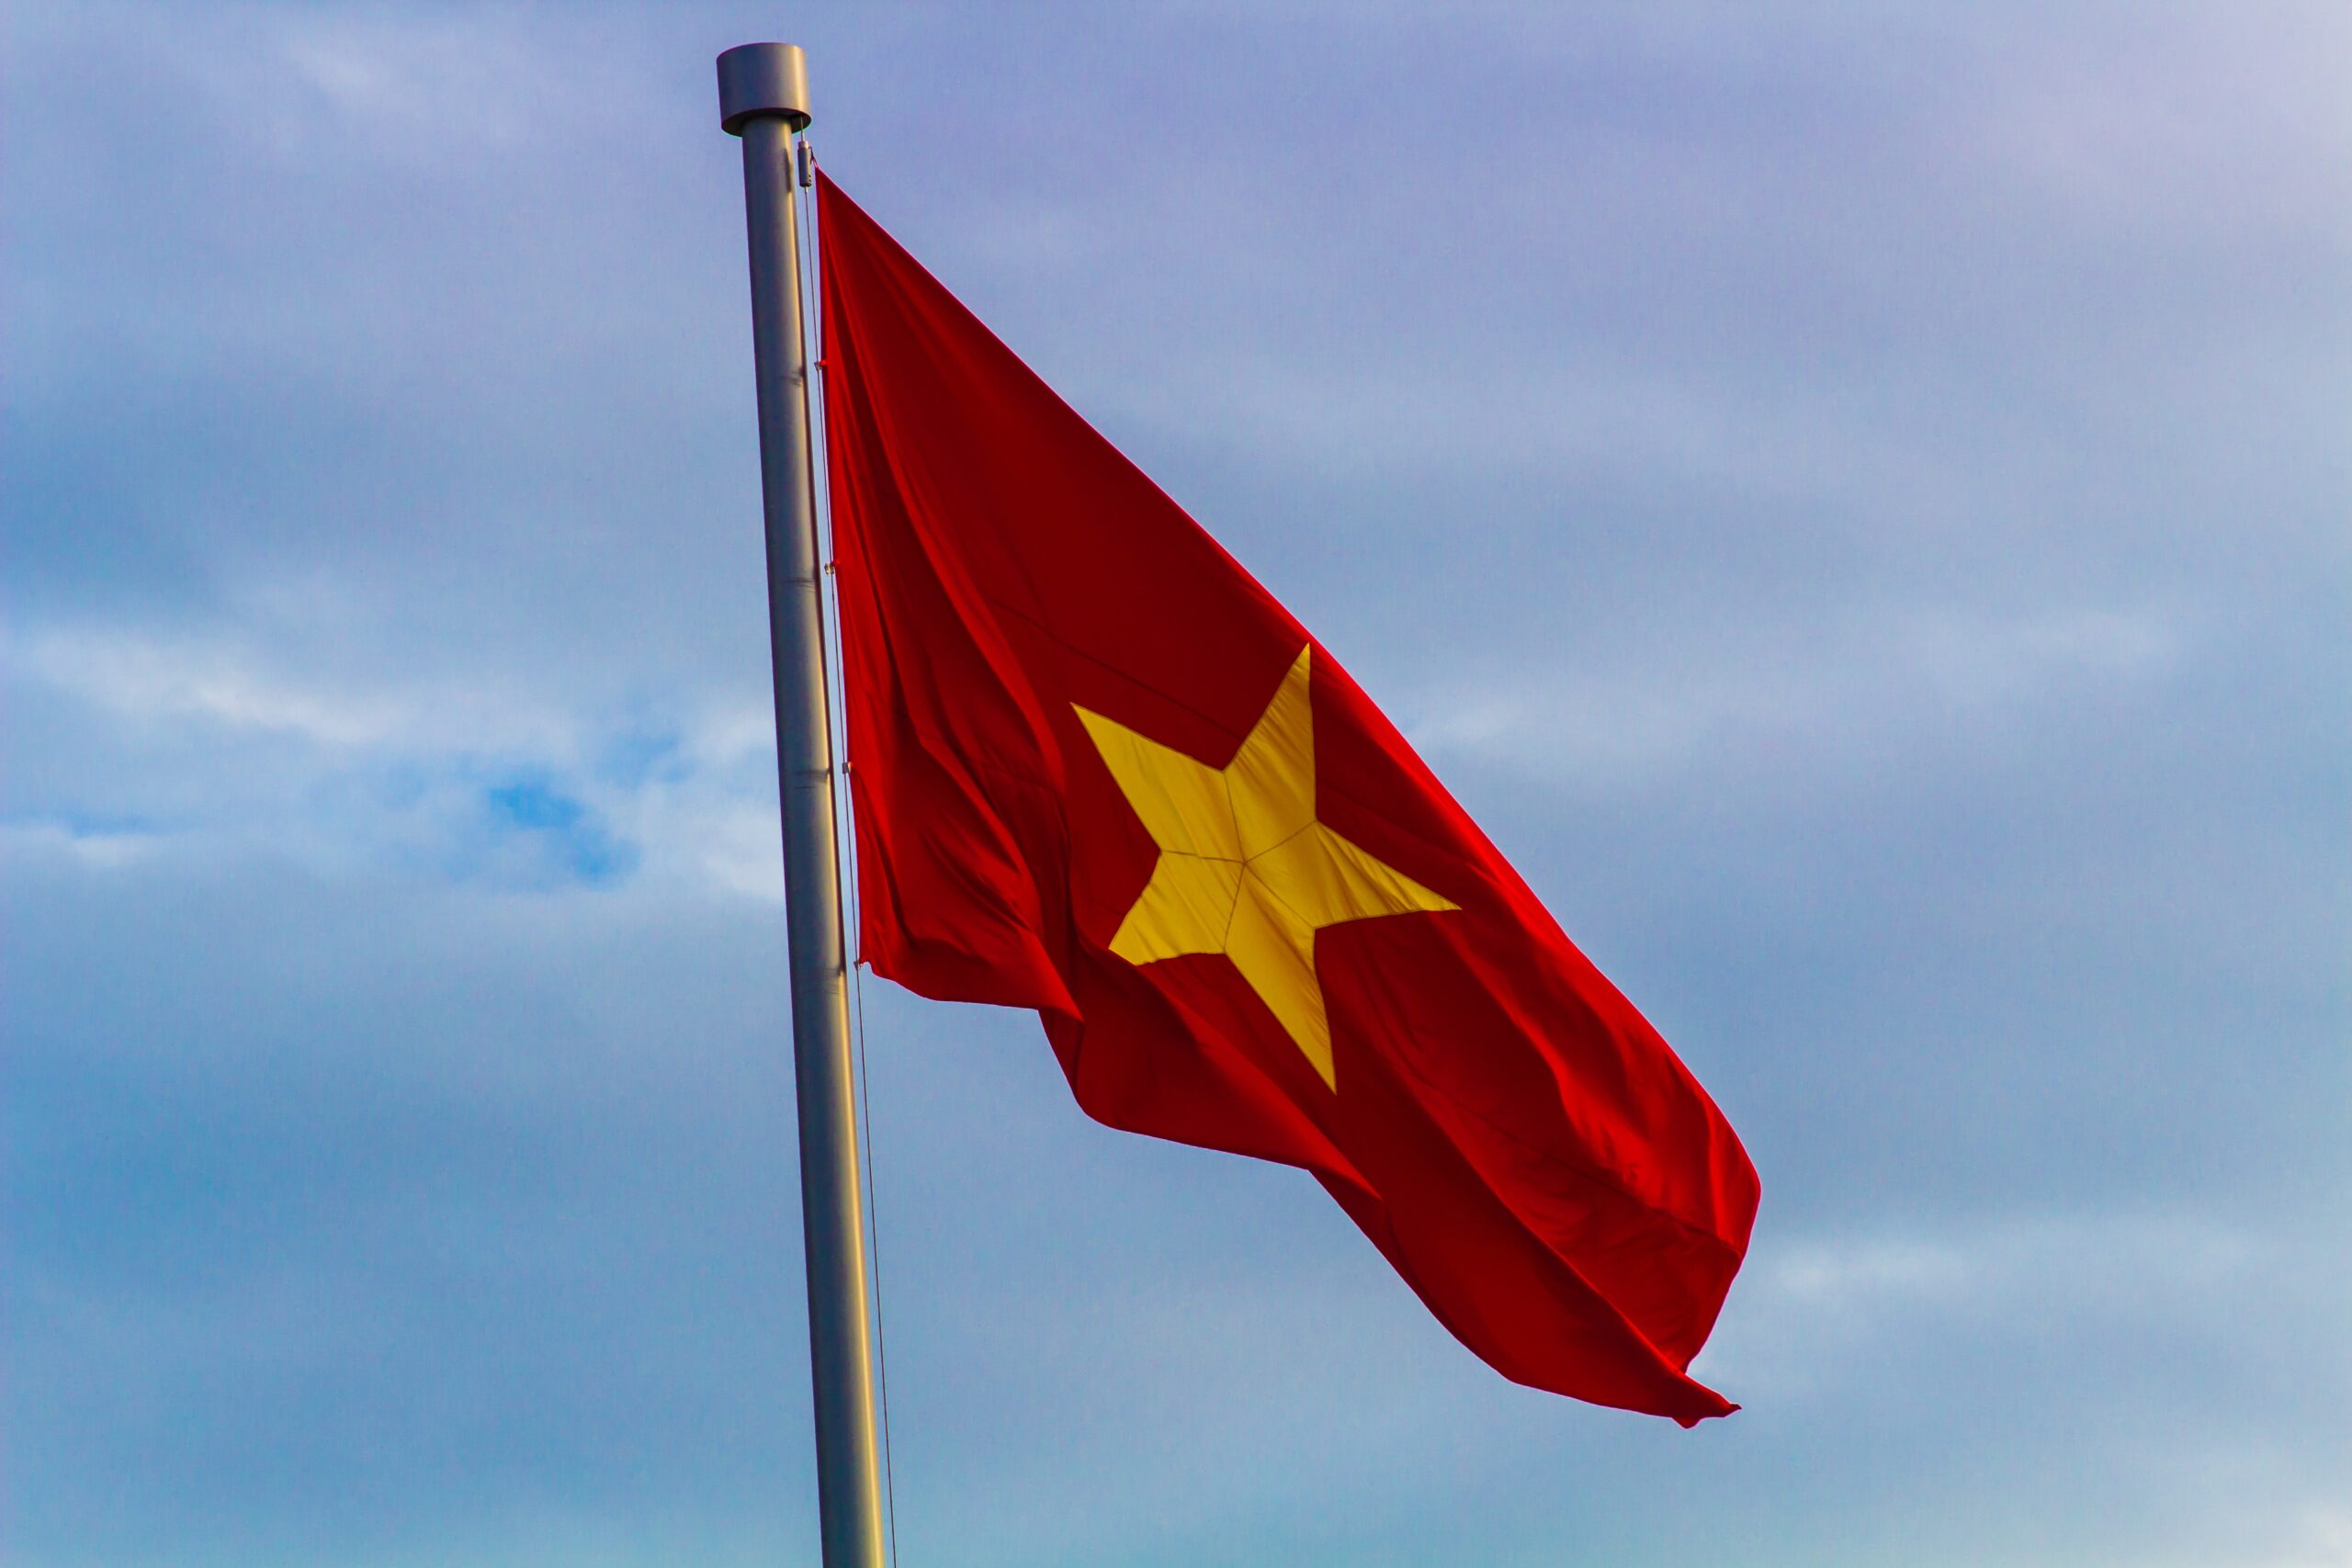 Ý nghĩa cờ đỏ sao vàng: Cờ đỏ sao vàng trên nền trắng là biểu tượng của quốc gia Việt Nam. Với ý nghĩa tượng trưng cho tinh thần đấu tranh dân tộc, cờ đỏ sao vàng là sợi dây liên kết tình cảm giữa các tầng lớp và đặc biệt là niềm tự hào của người dân Việt Nam.